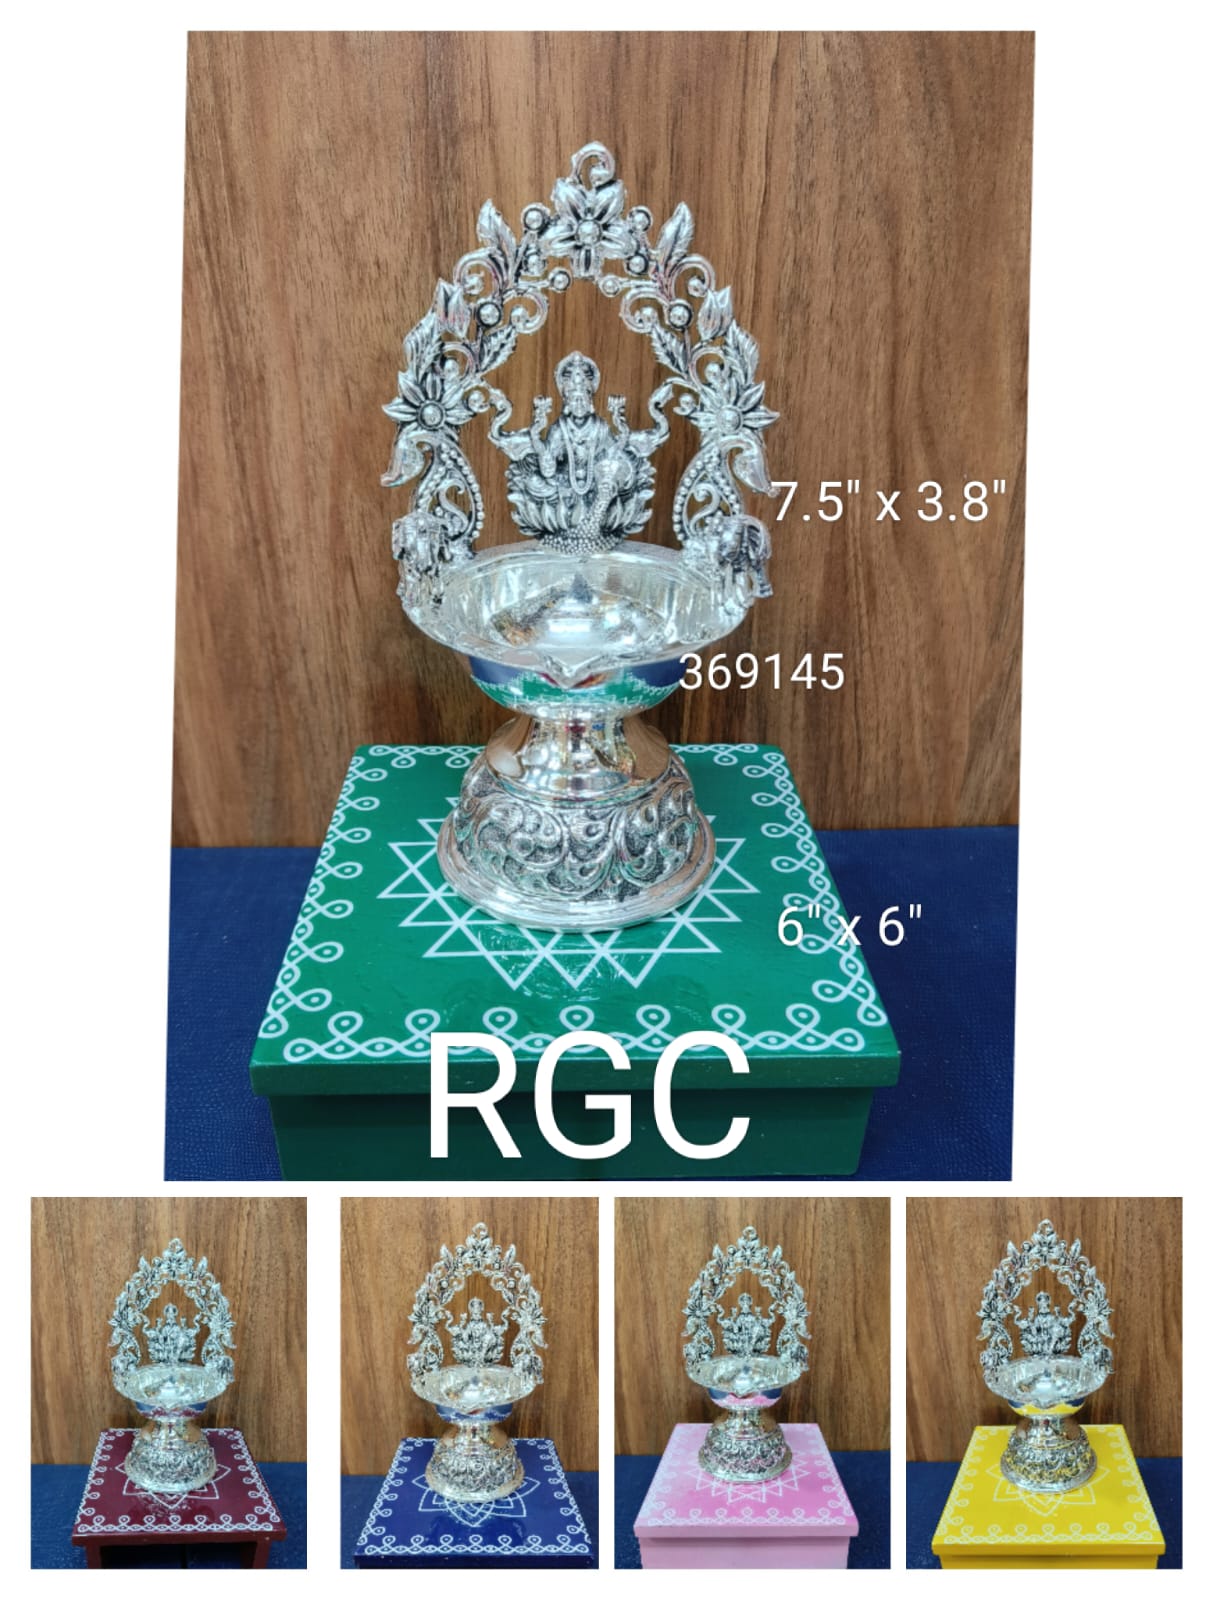 RGC antique German silver new kamakshi diya big size with 1 laminate peeta